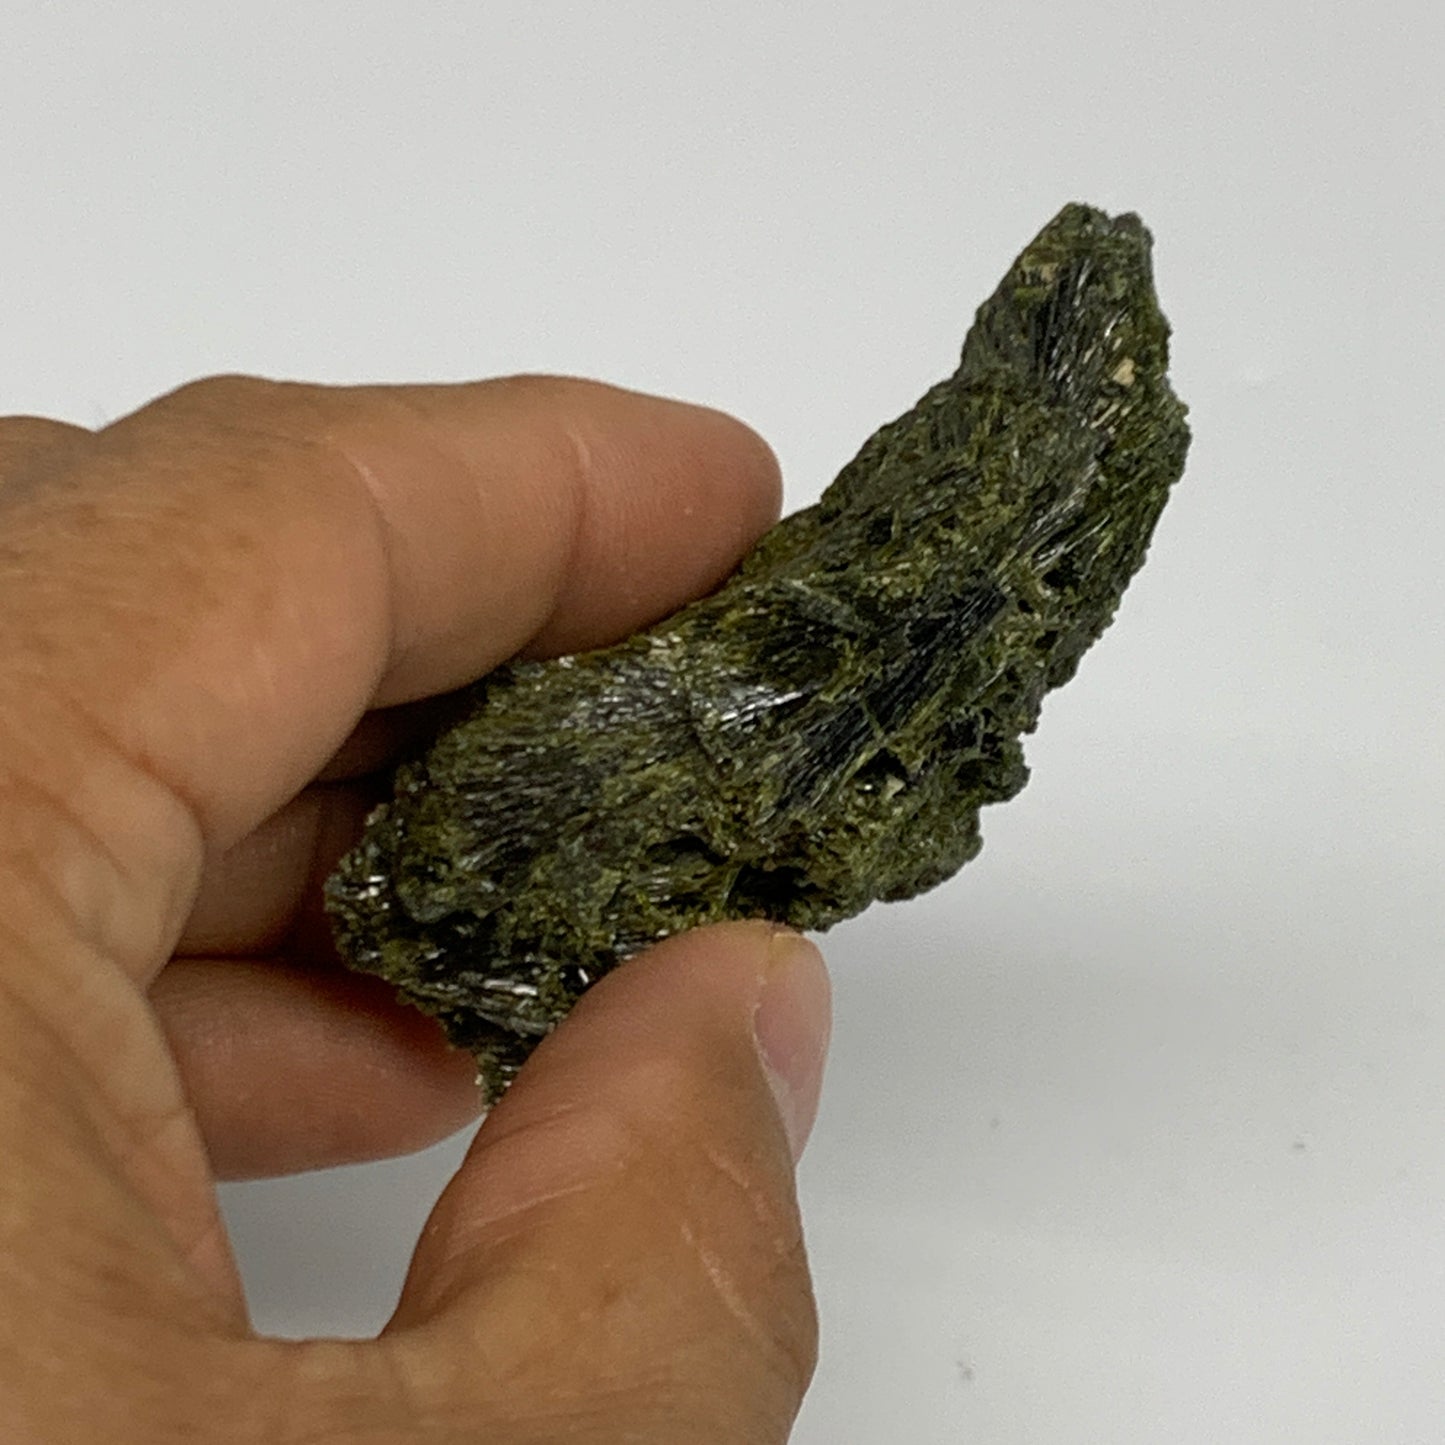 46g,2.3"x1.5"x0.7",Green Epidote Custer/Leaf Mineral Specimen @Pakistan,B27597